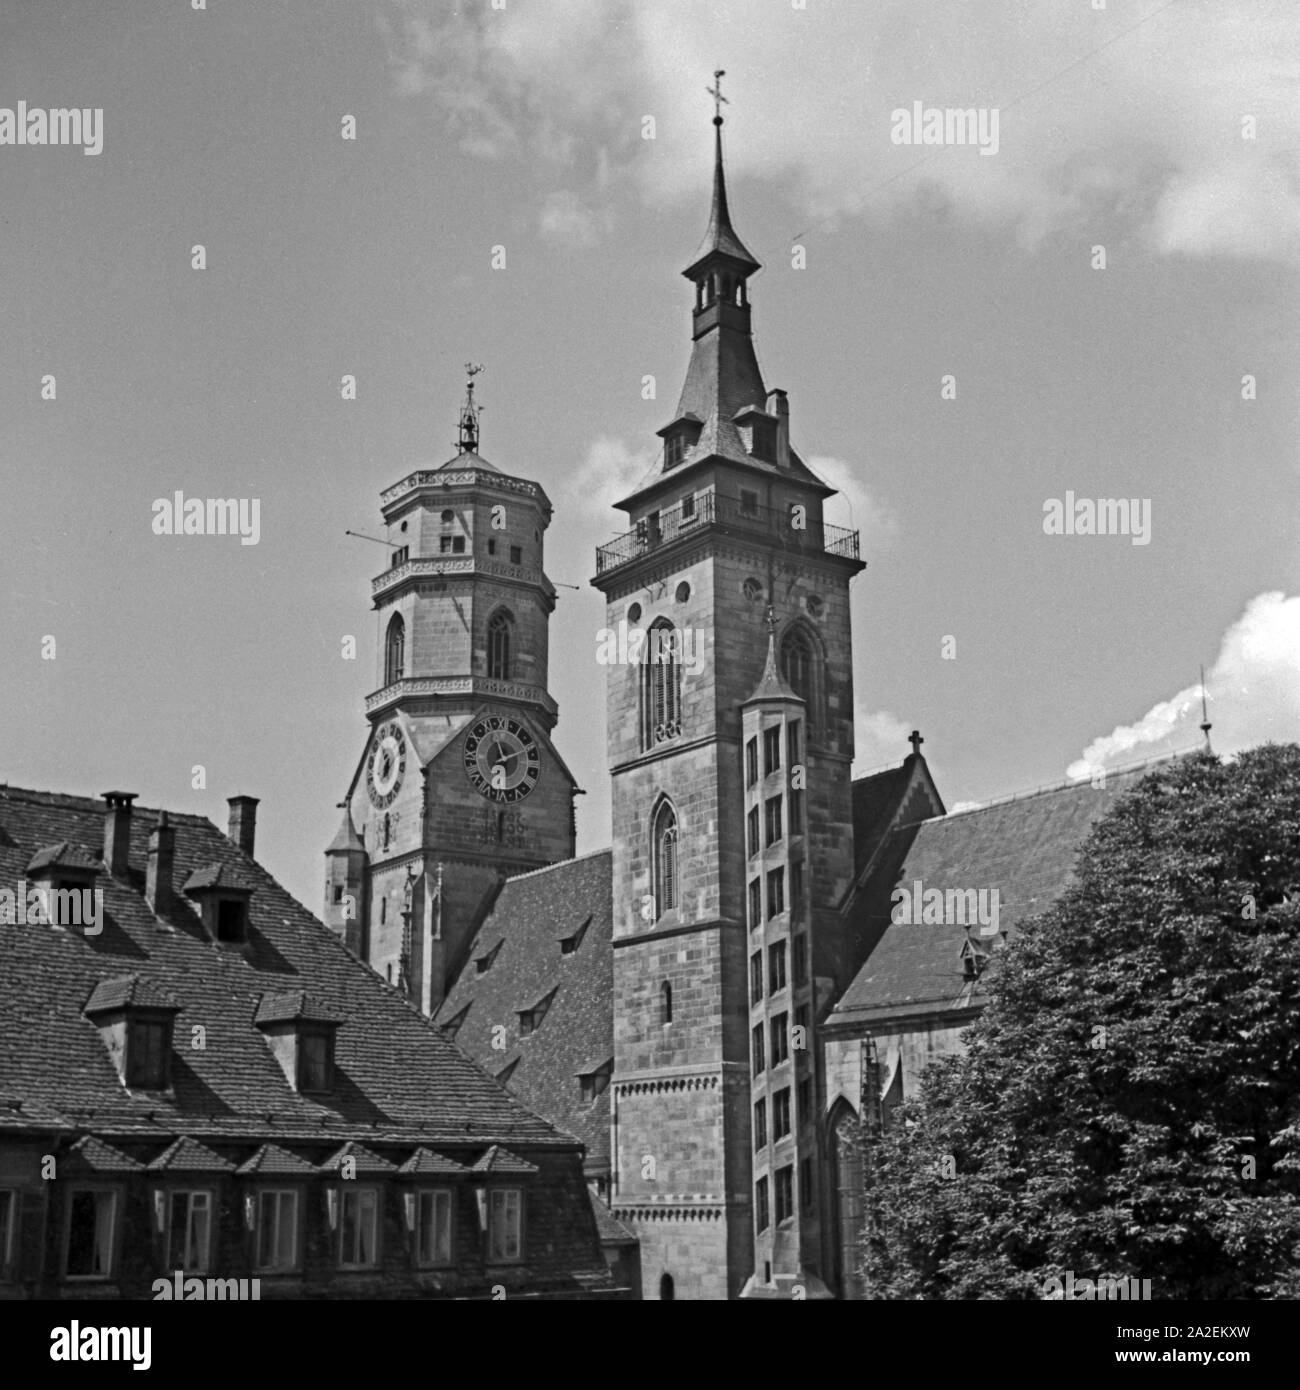 Blick auf die Türme der Stiftskirche a Stoccarda, Deutschland 1930er Jahre. Visualizzare per i campanili della chiesa collegiata a Stoccarda, Germania 1930s. Foto Stock